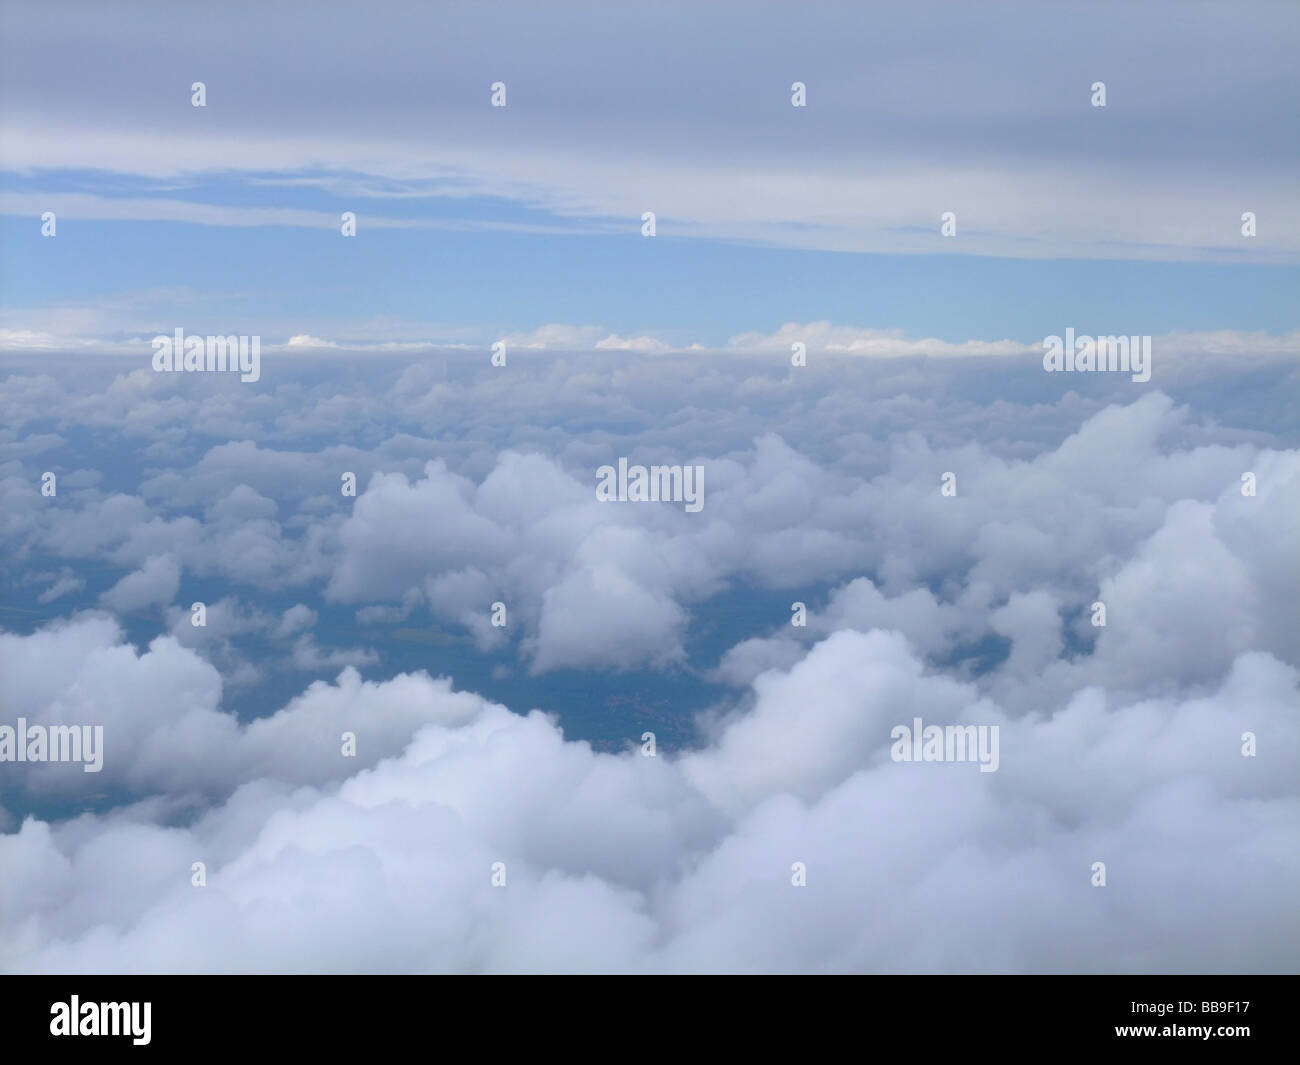 Luftbild aus zwei Schichten von Wolken: nach unten, einige Wolken Altocumulus (Ac) und oben einige Stratocumulus-Wolken (Sc) Stockfoto